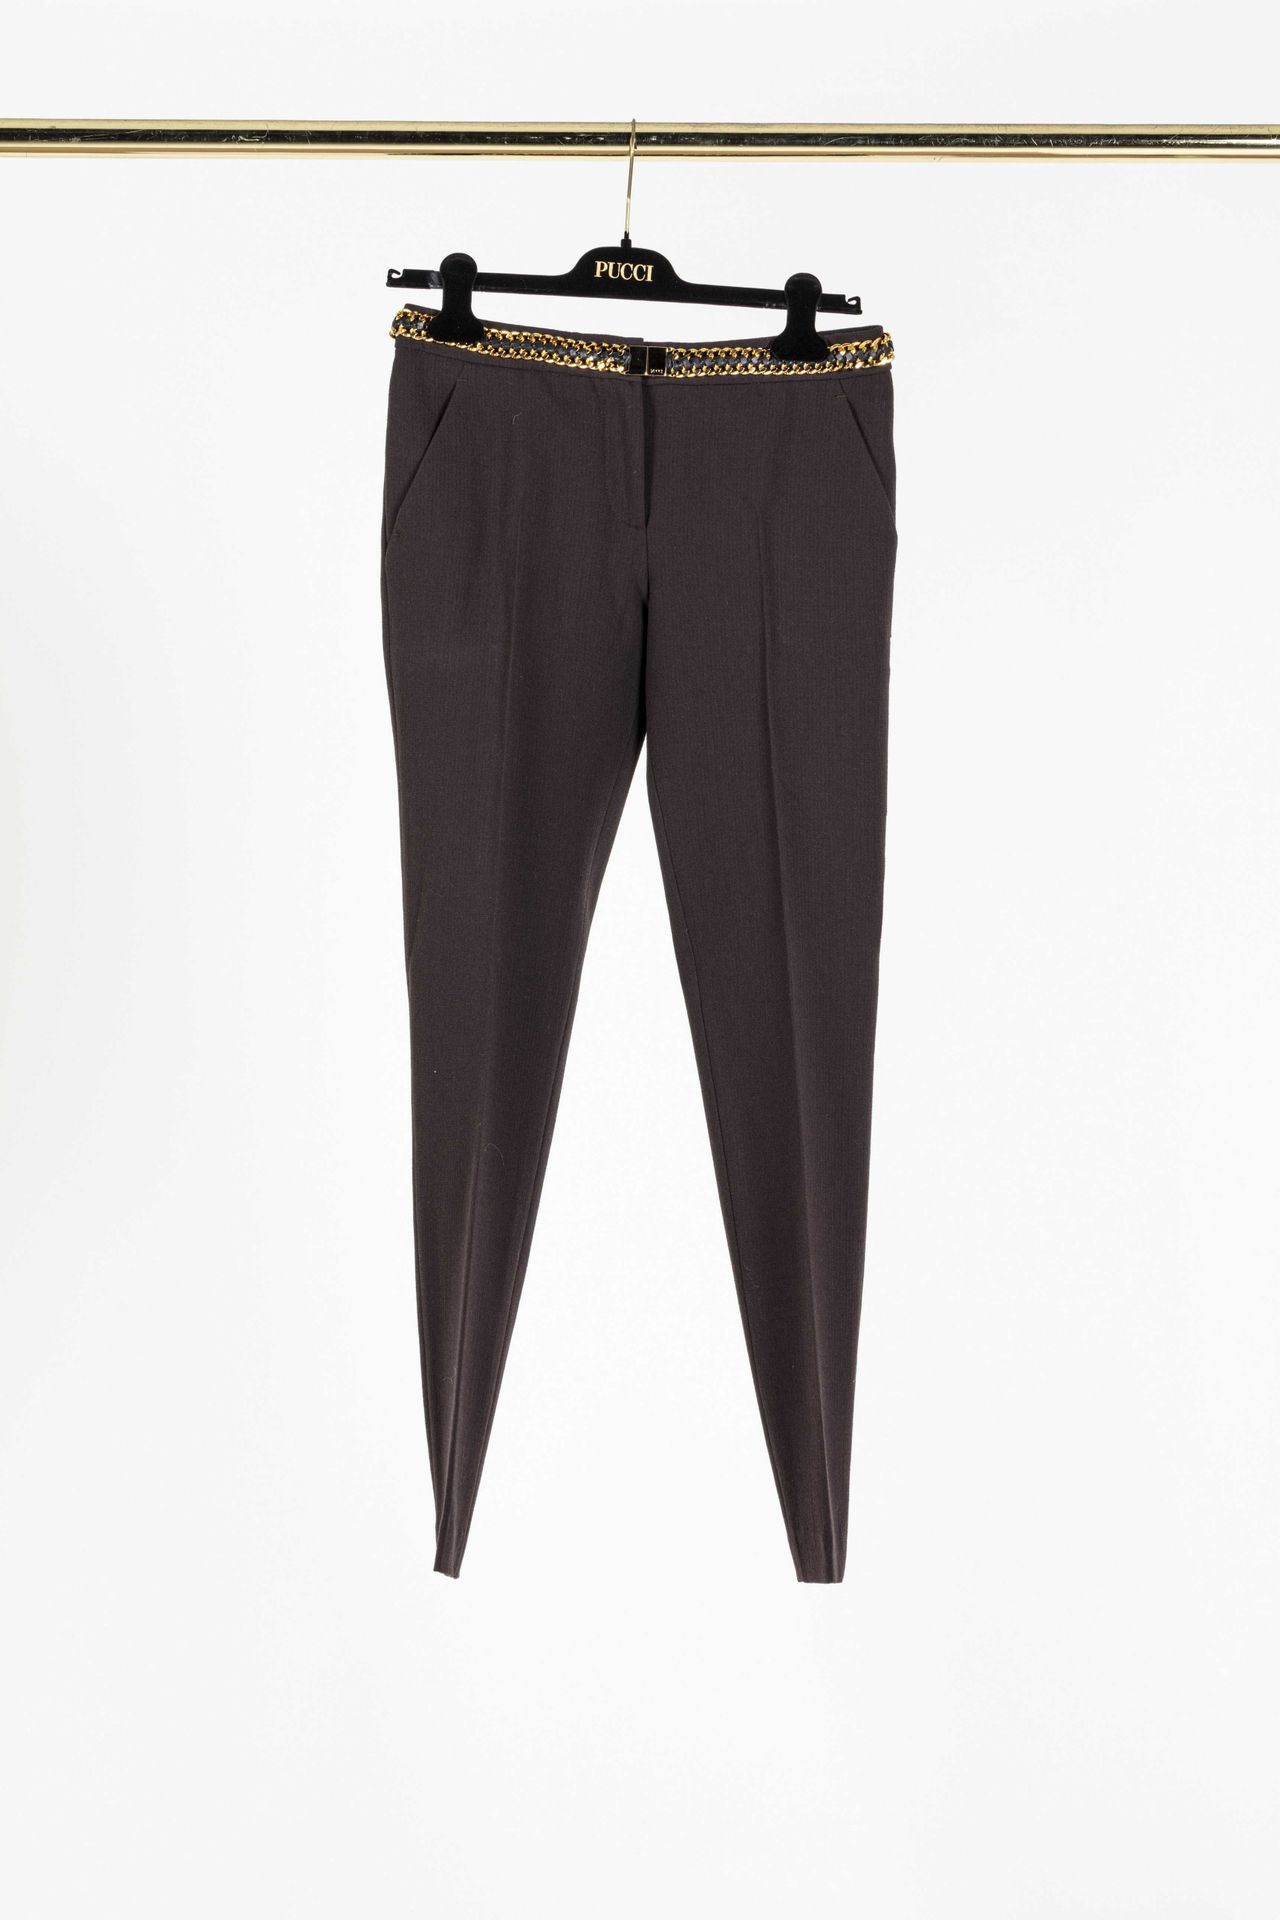 Null EMILIO PUCCI: 棕色羊毛和弹性纤维的直筒裤，腰带采用黑色皮革交错的链条造型。

T,36